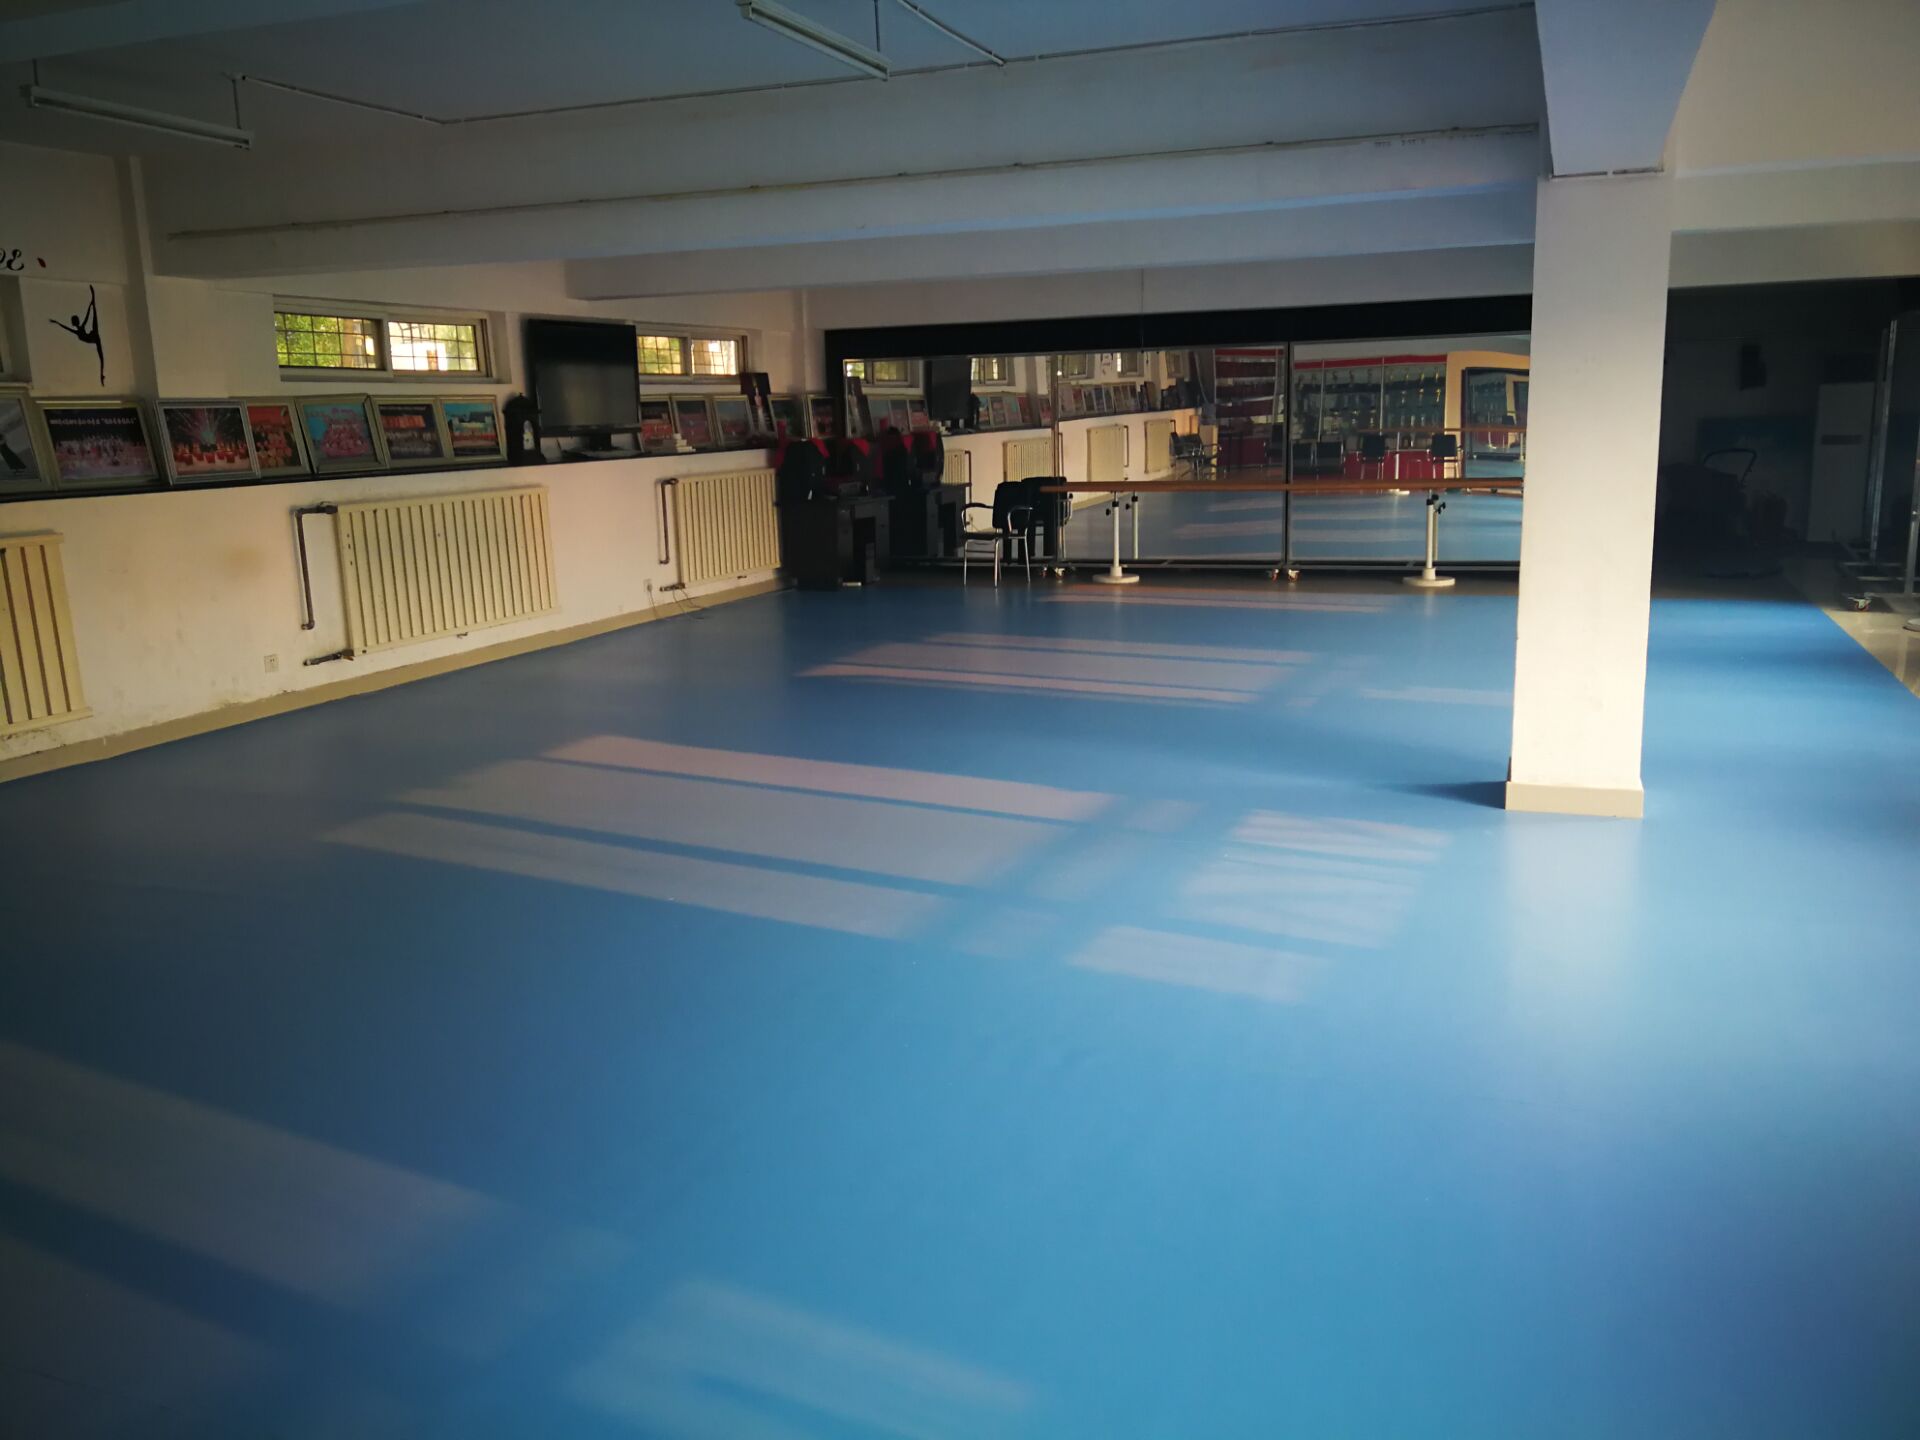 天津学校舞蹈教室地胶 幼儿园悬浮拼装地板施工